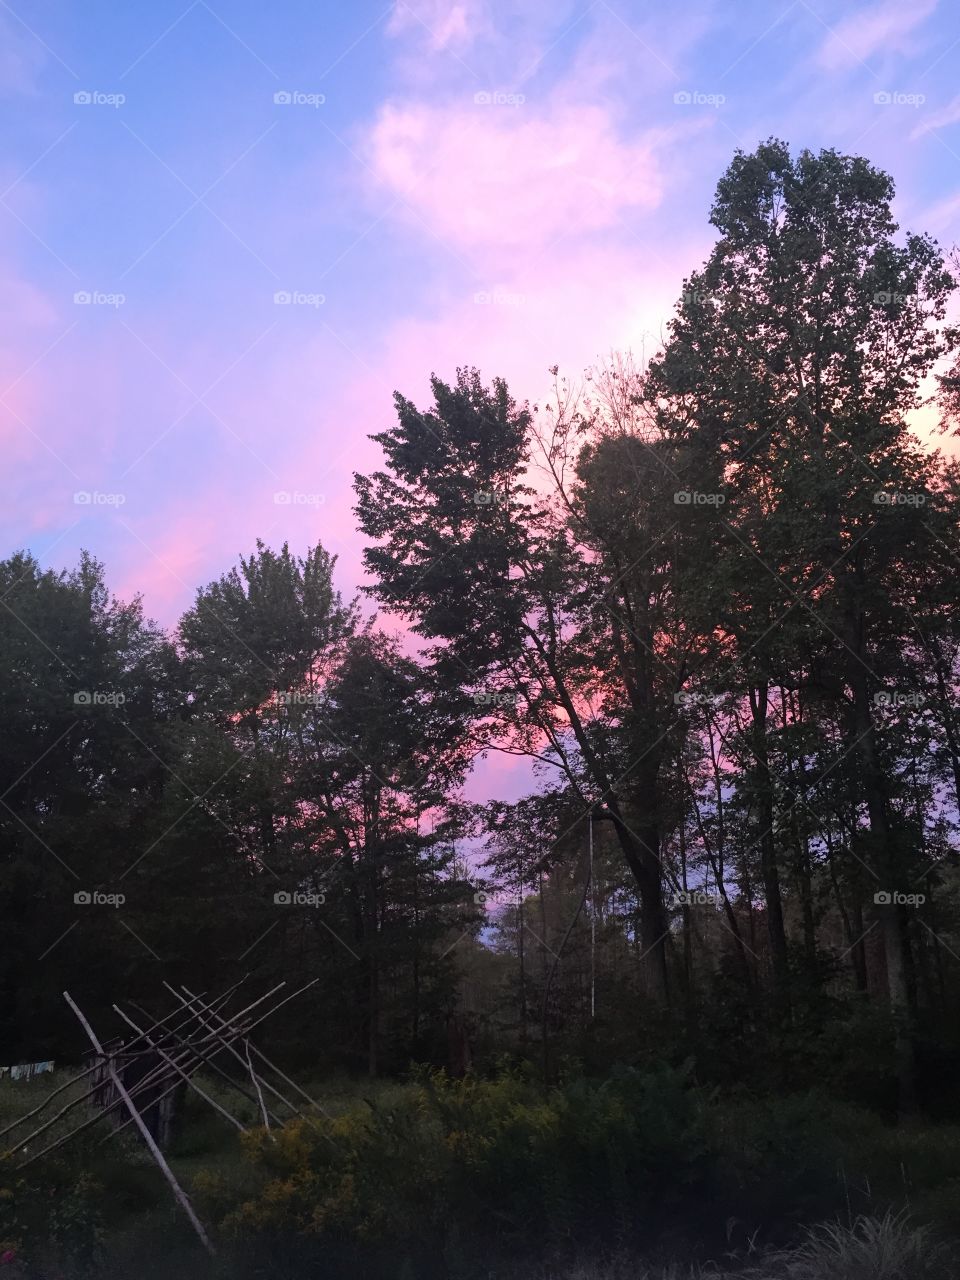 Purple evening sky